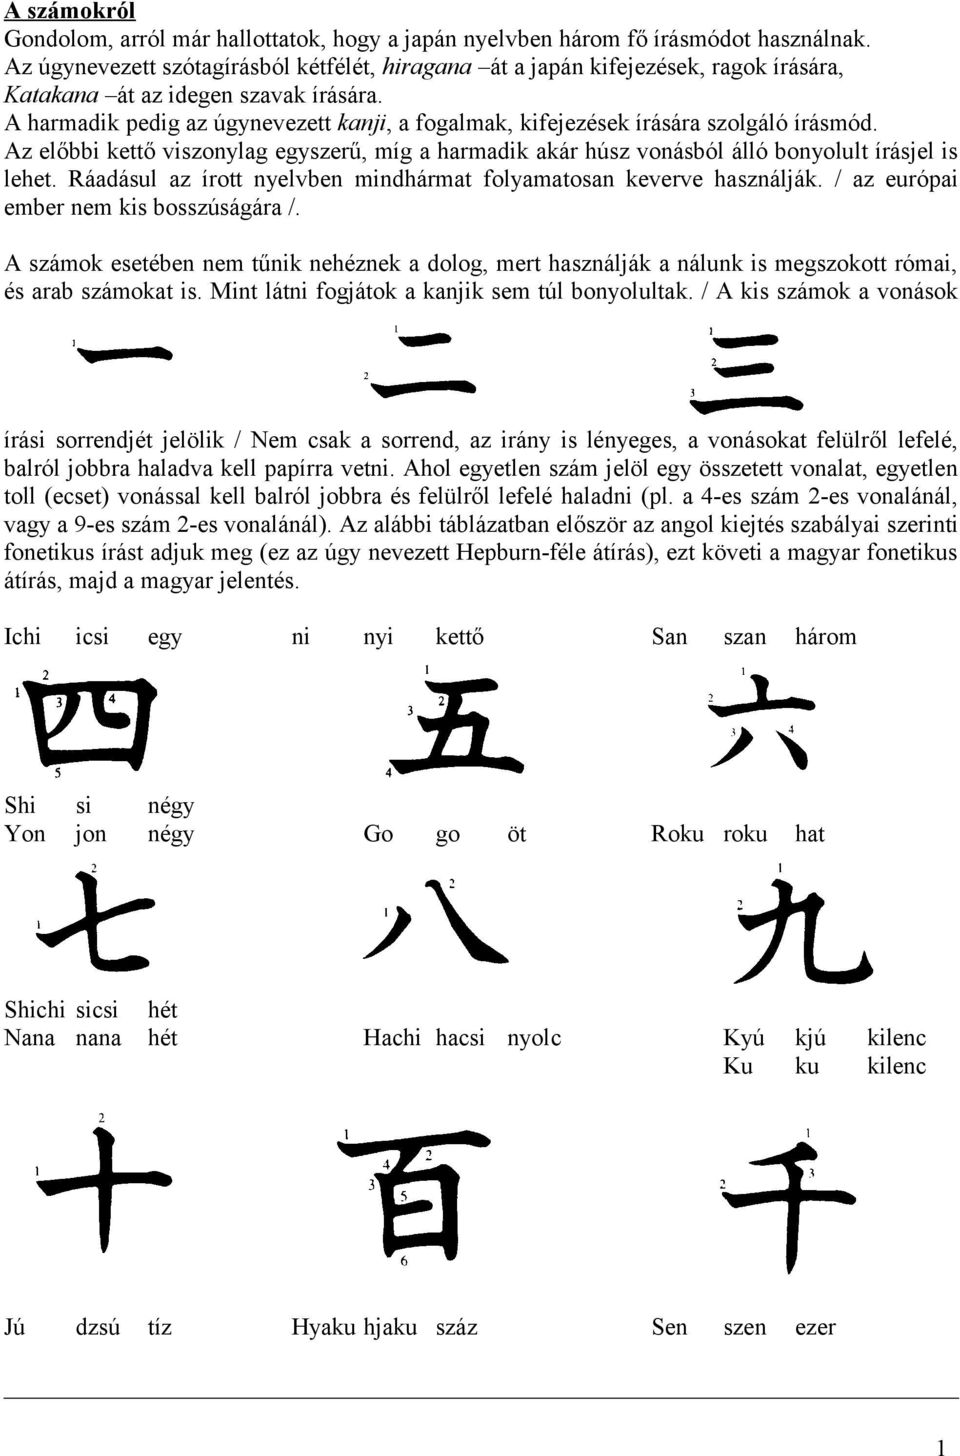 A harmadik pedig az úgynevezett kanji, a fogalmak, kifejezések írására szolgáló írásmód. Az előbbi kettő viszonylag egyszerű, míg a harmadik akár húsz vonásból álló bonyolult írásjel is lehet.